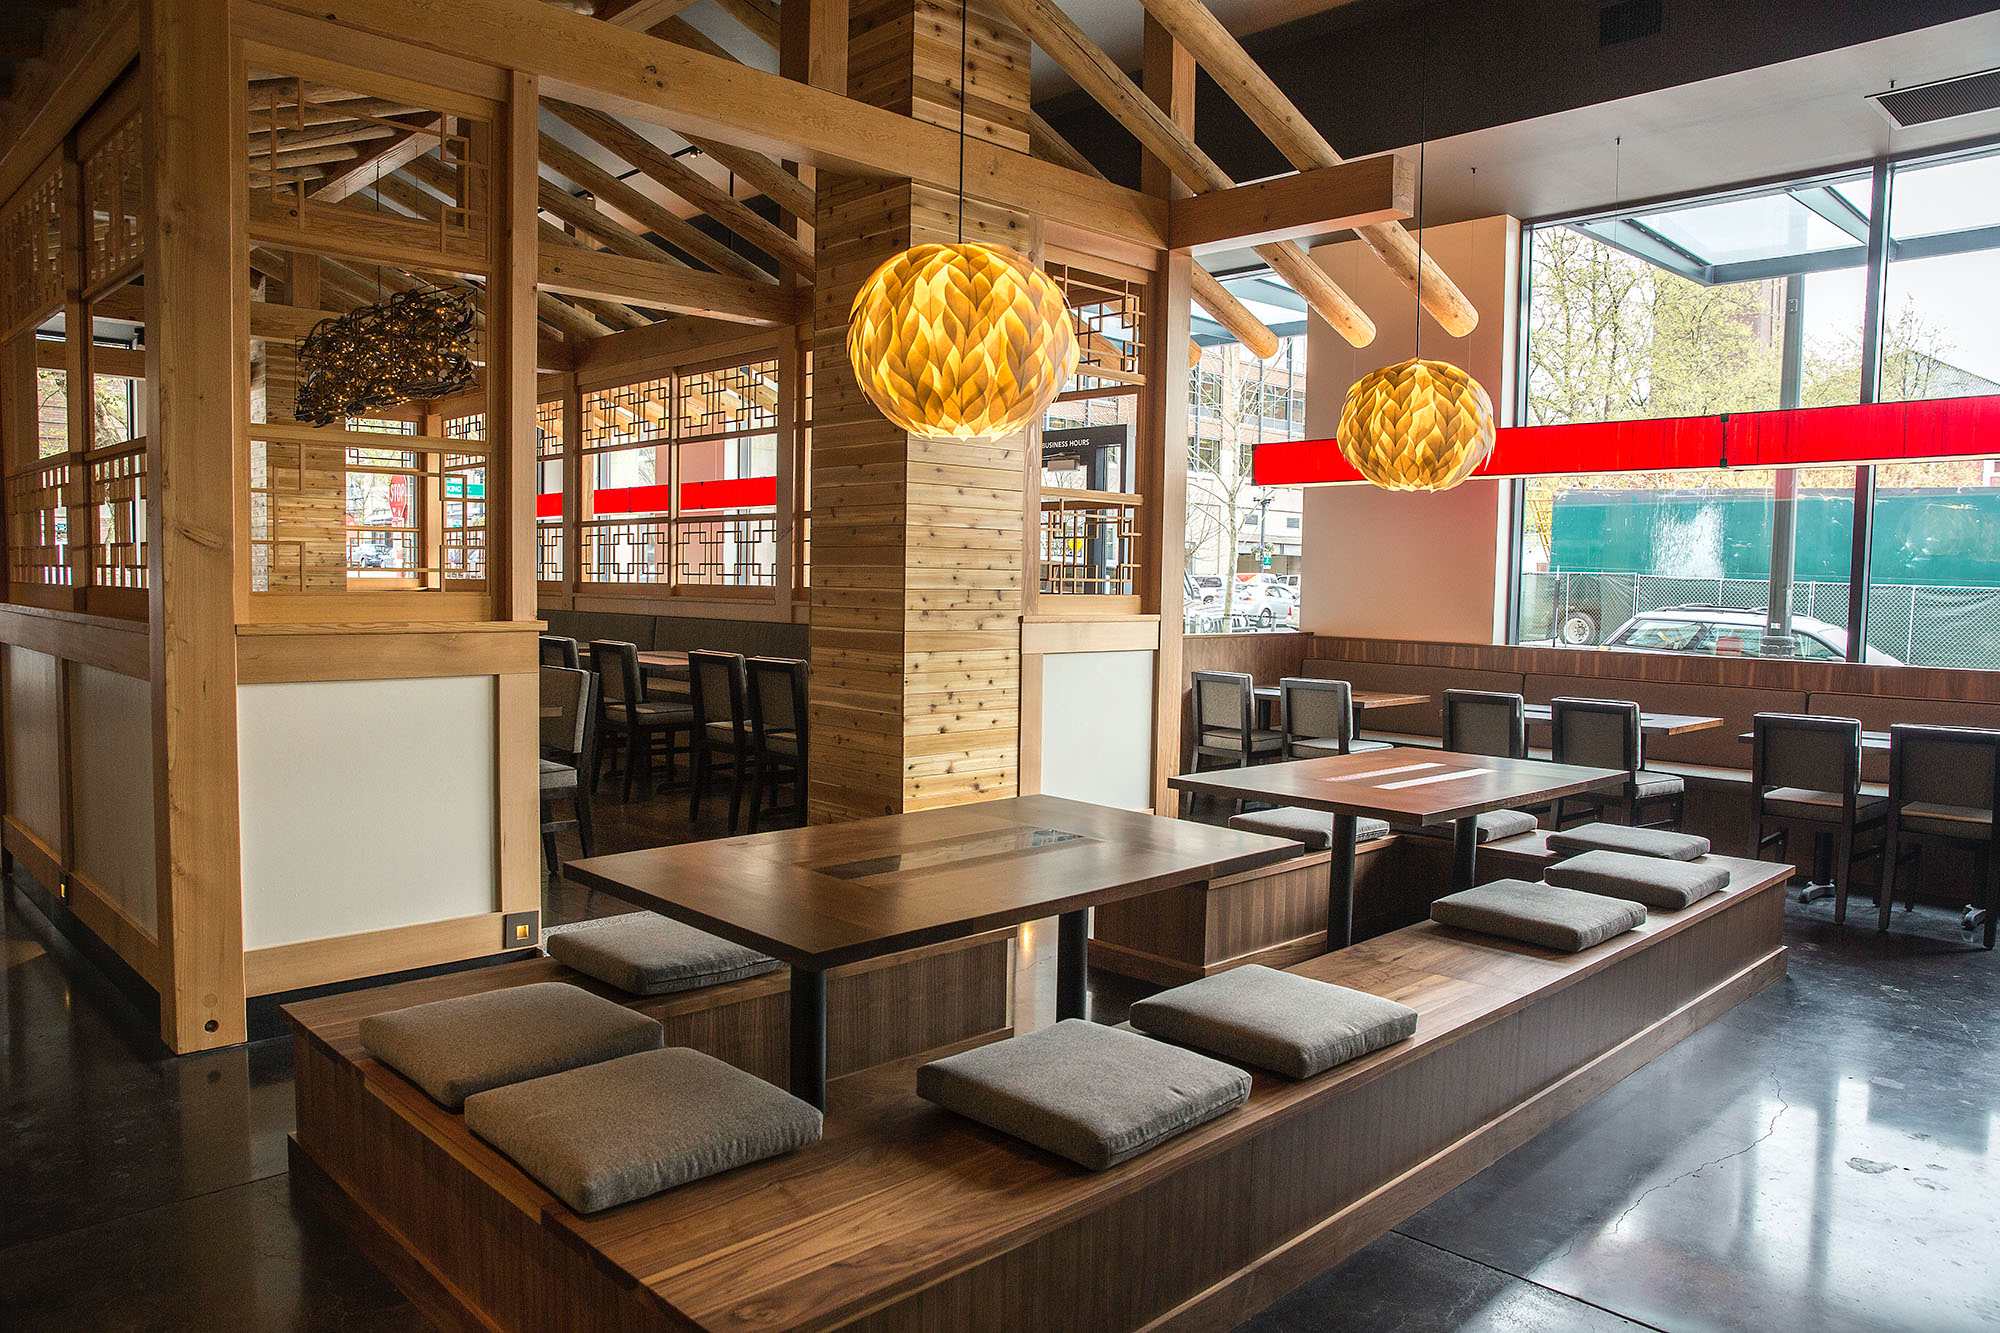 Thiết kế nhà hàng phong cách Hàn Quốc được giới trẻ ưa chuộng